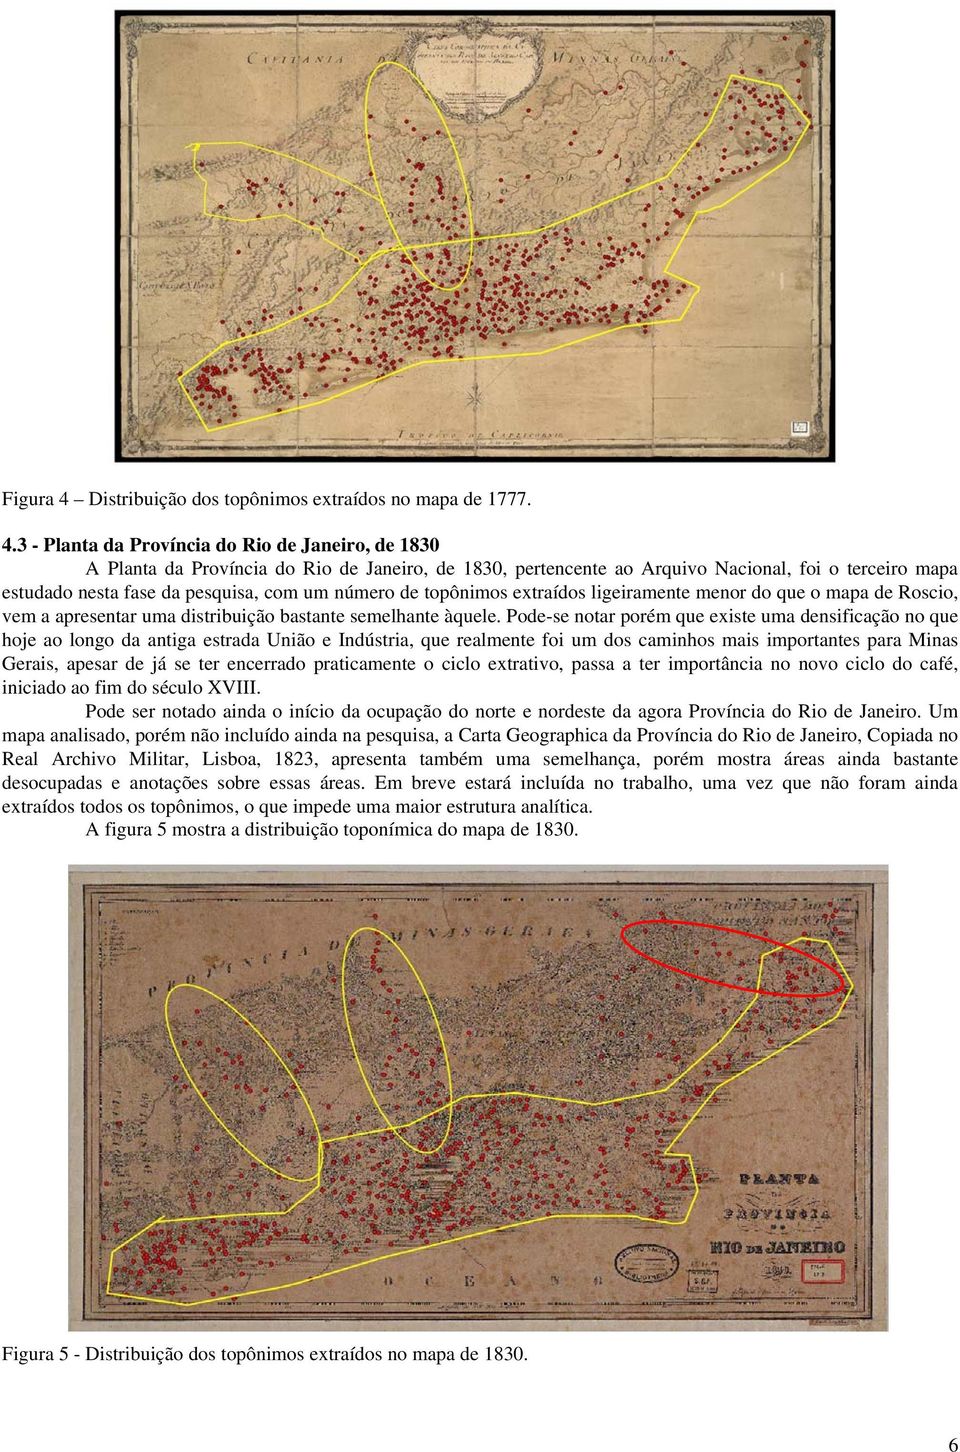 3 - Planta da Província do Rio de Janeiro, de 1830 A Planta da Província do Rio de Janeiro, de 1830, pertencente ao Arquivo Nacional, foi o terceiro mapa estudado nesta fase da pesquisa, com um